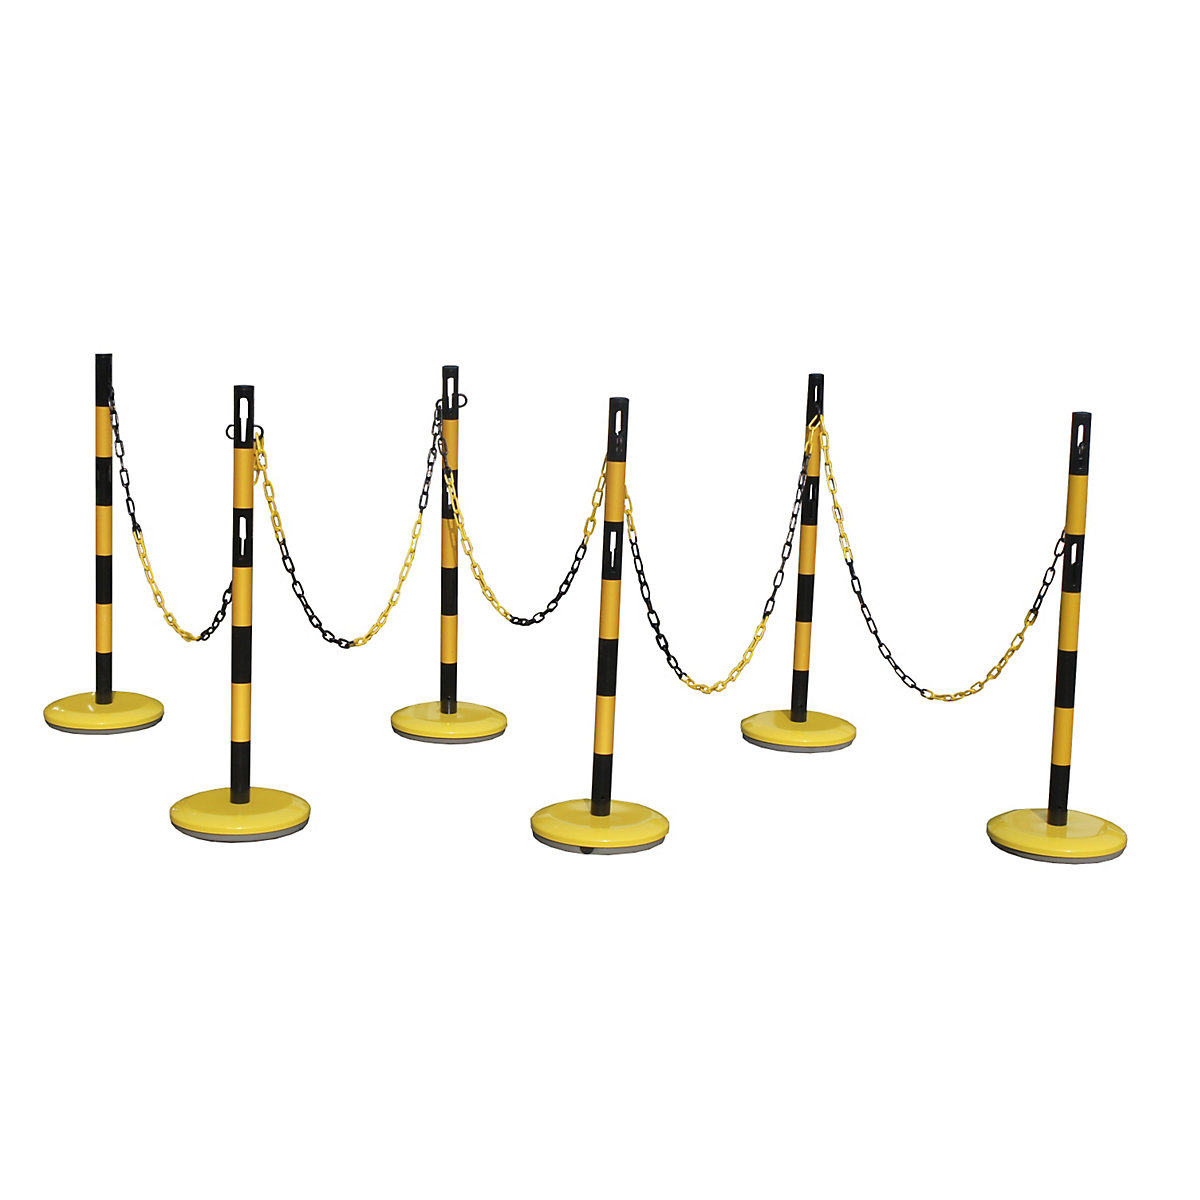 Afzetpaalset met ketting – VISO, 6 palen, ketting 15 m, geel/zwart